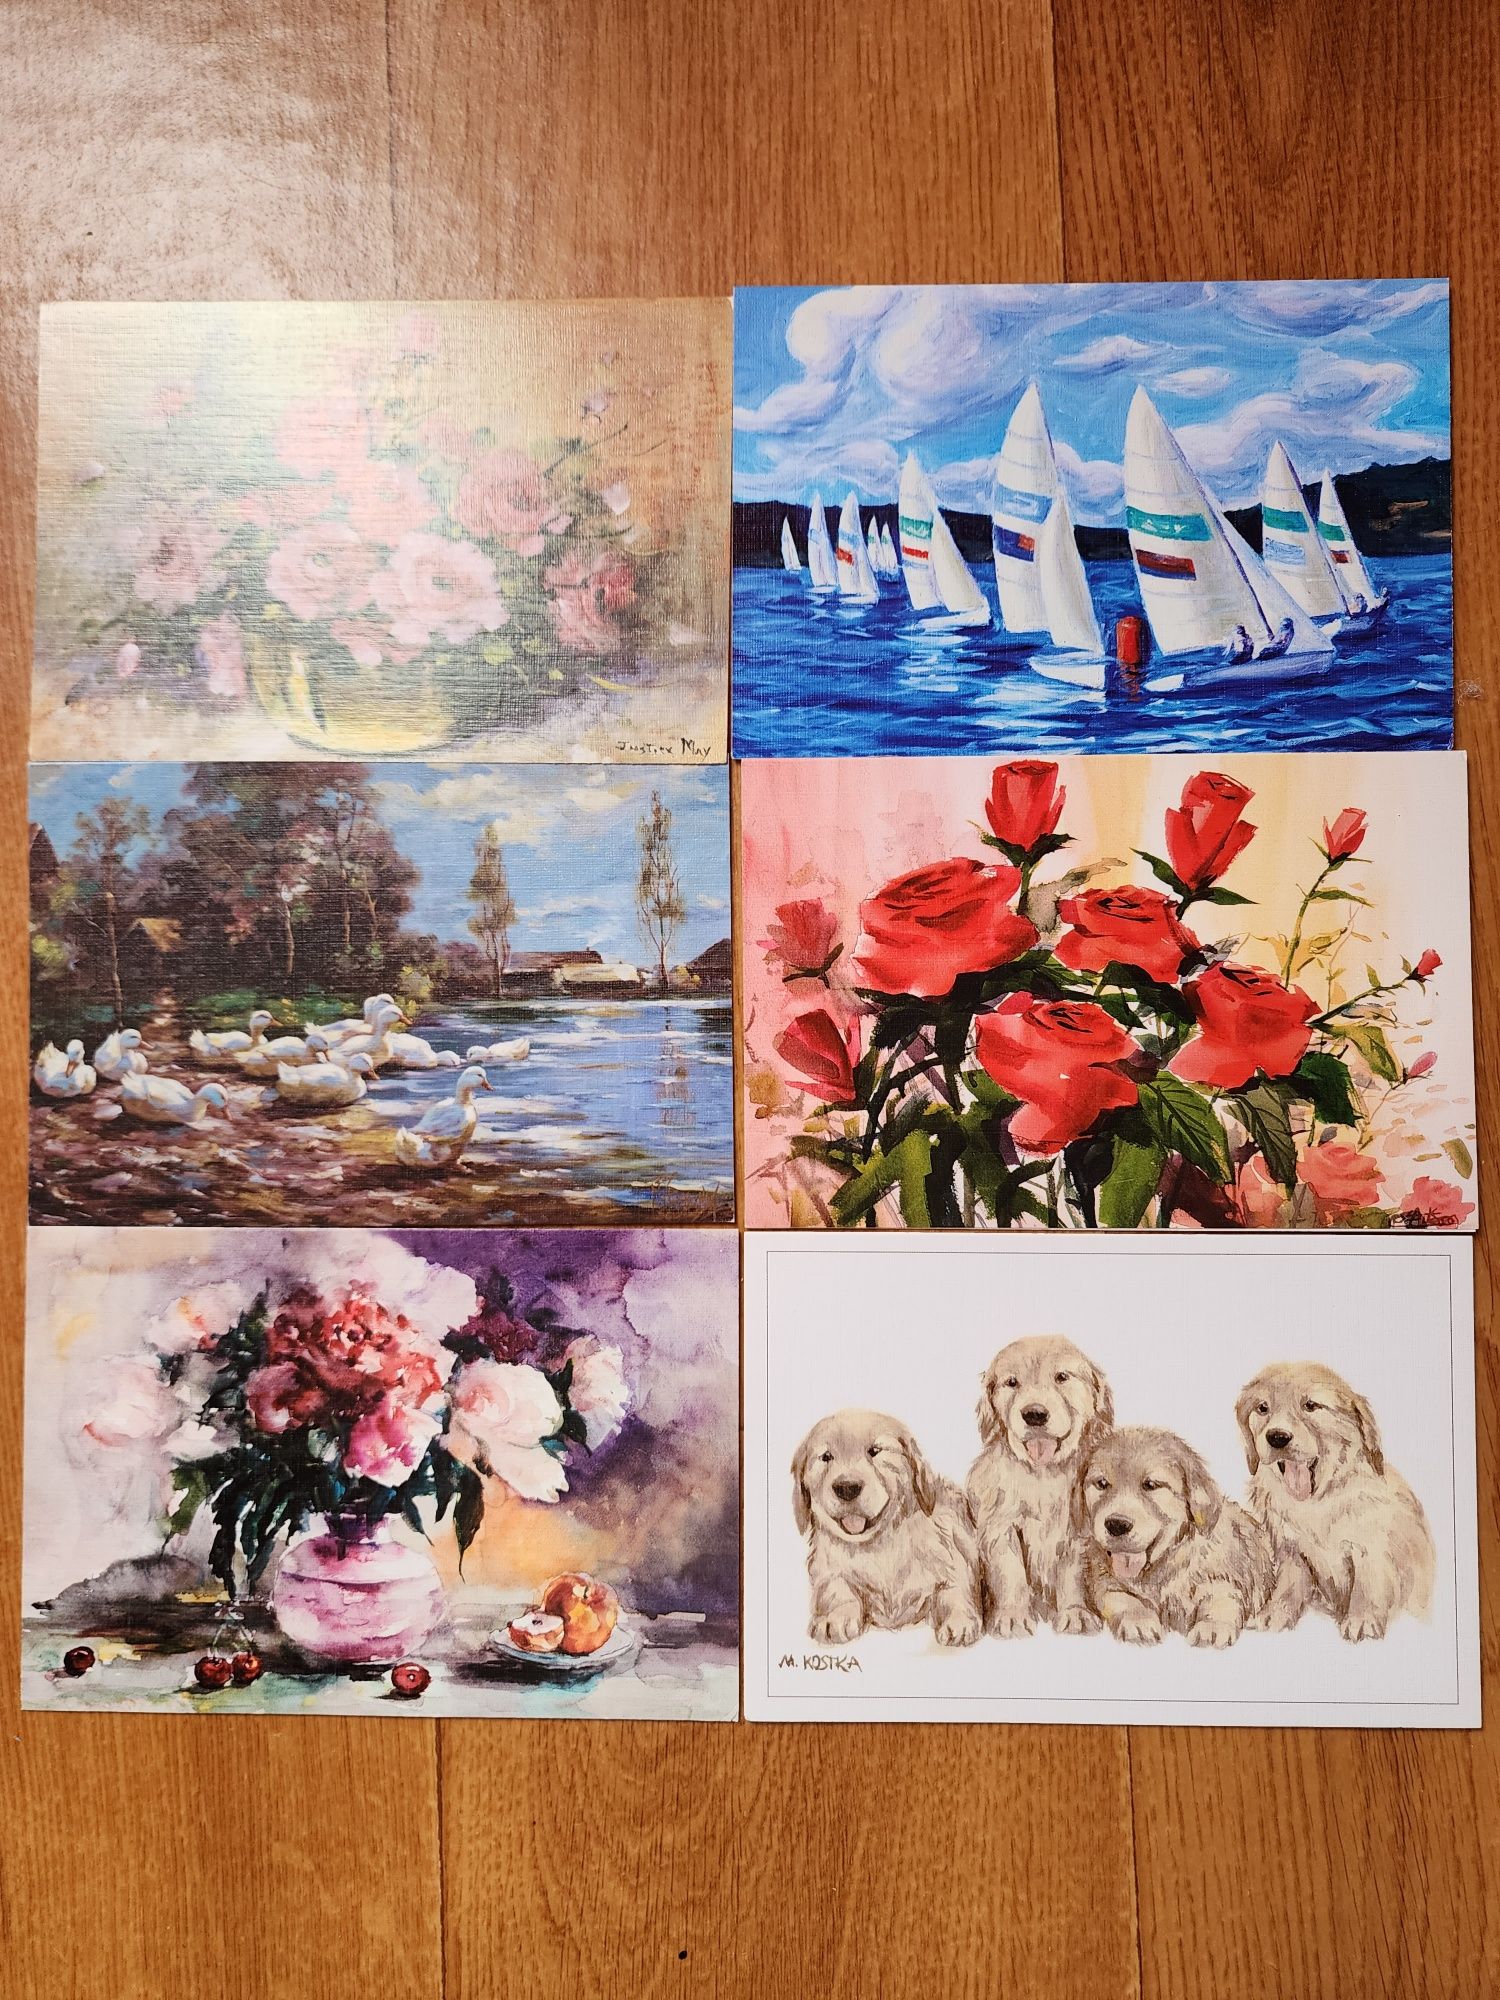 Серія листівок зображень картин майстрів, квіти та море, 40 одиниць.